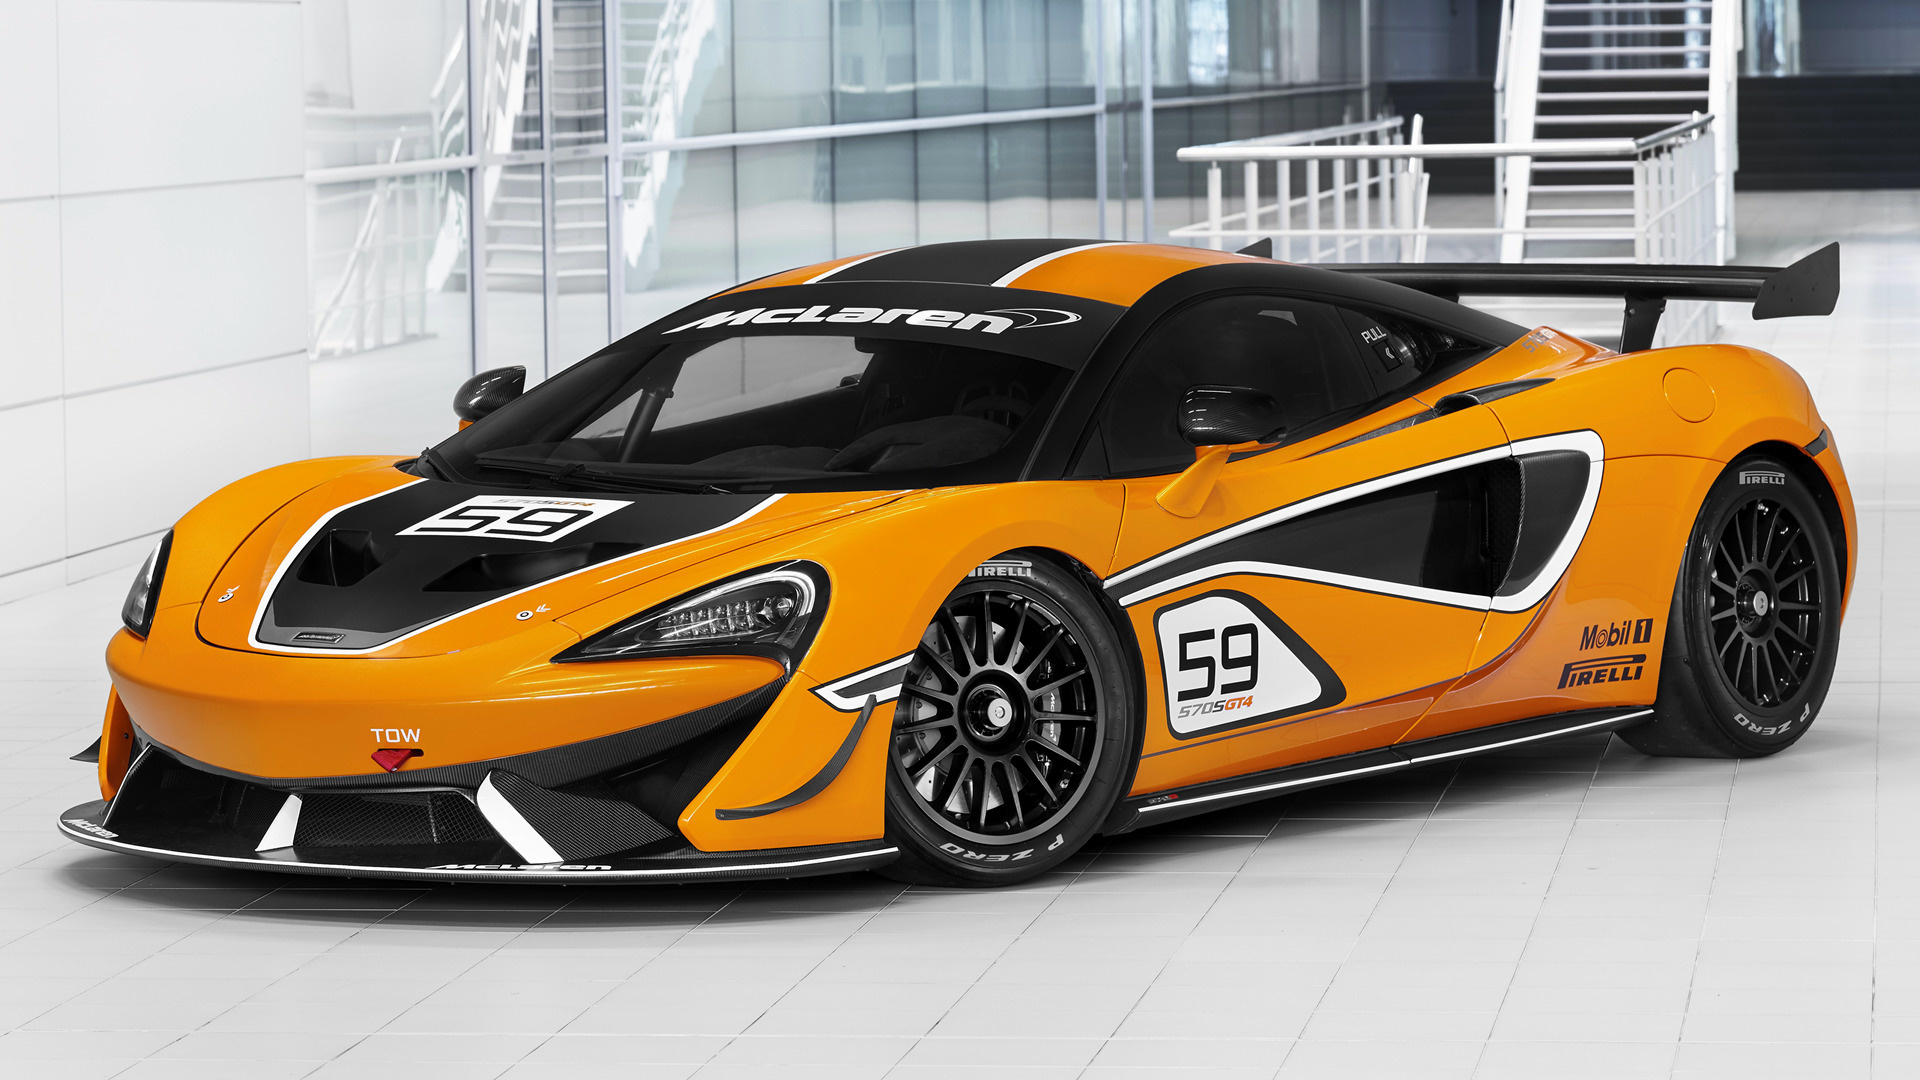 Las Moras Racing and Equipe Verschuur enter two McLaren 570S GT4s in